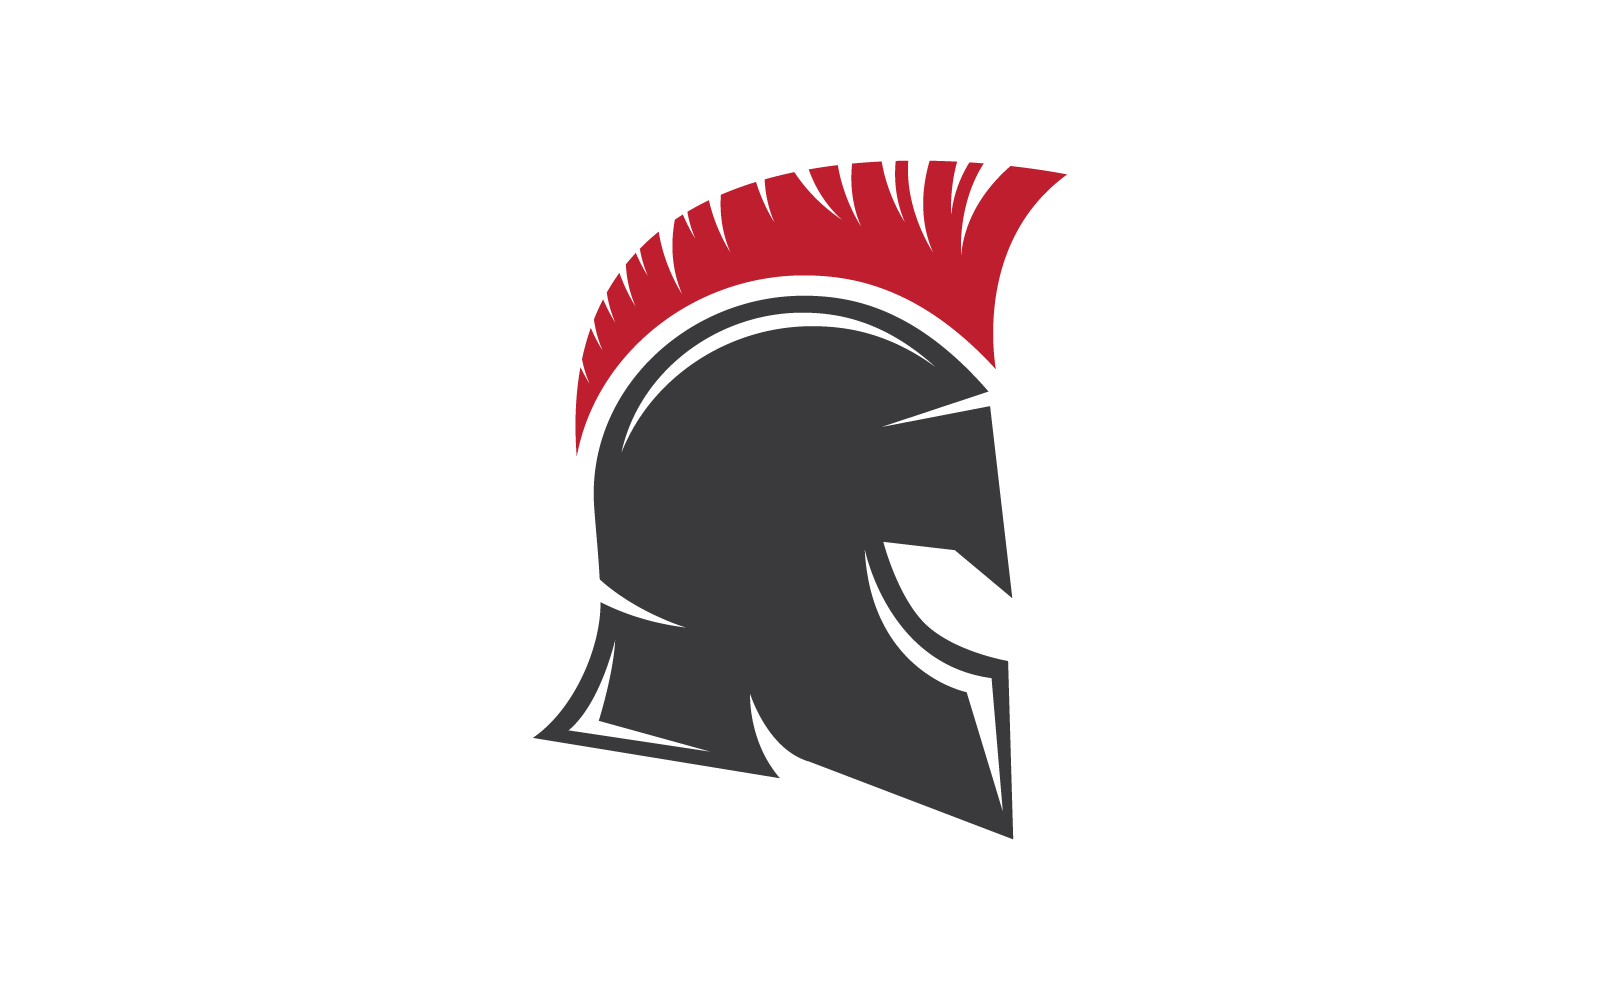 Spartan gladiator logo vector template